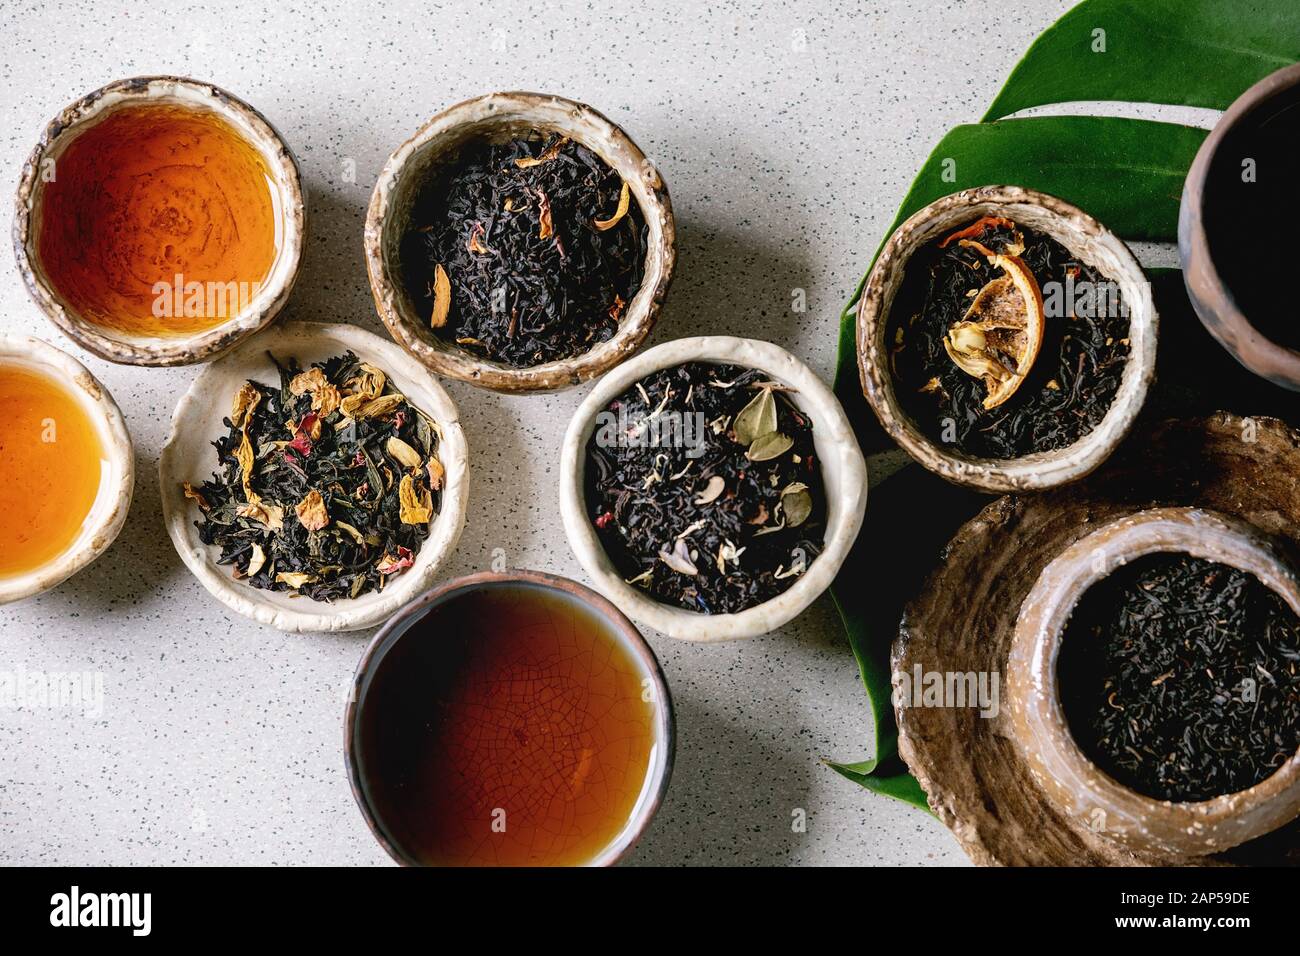 Variedad de té caliente y seco en verde y negro, en estilo tradicional y wabi sabi refractario artesanía cerámica vasos y copas, en hoja monstera exóticos más gris Foto de stock